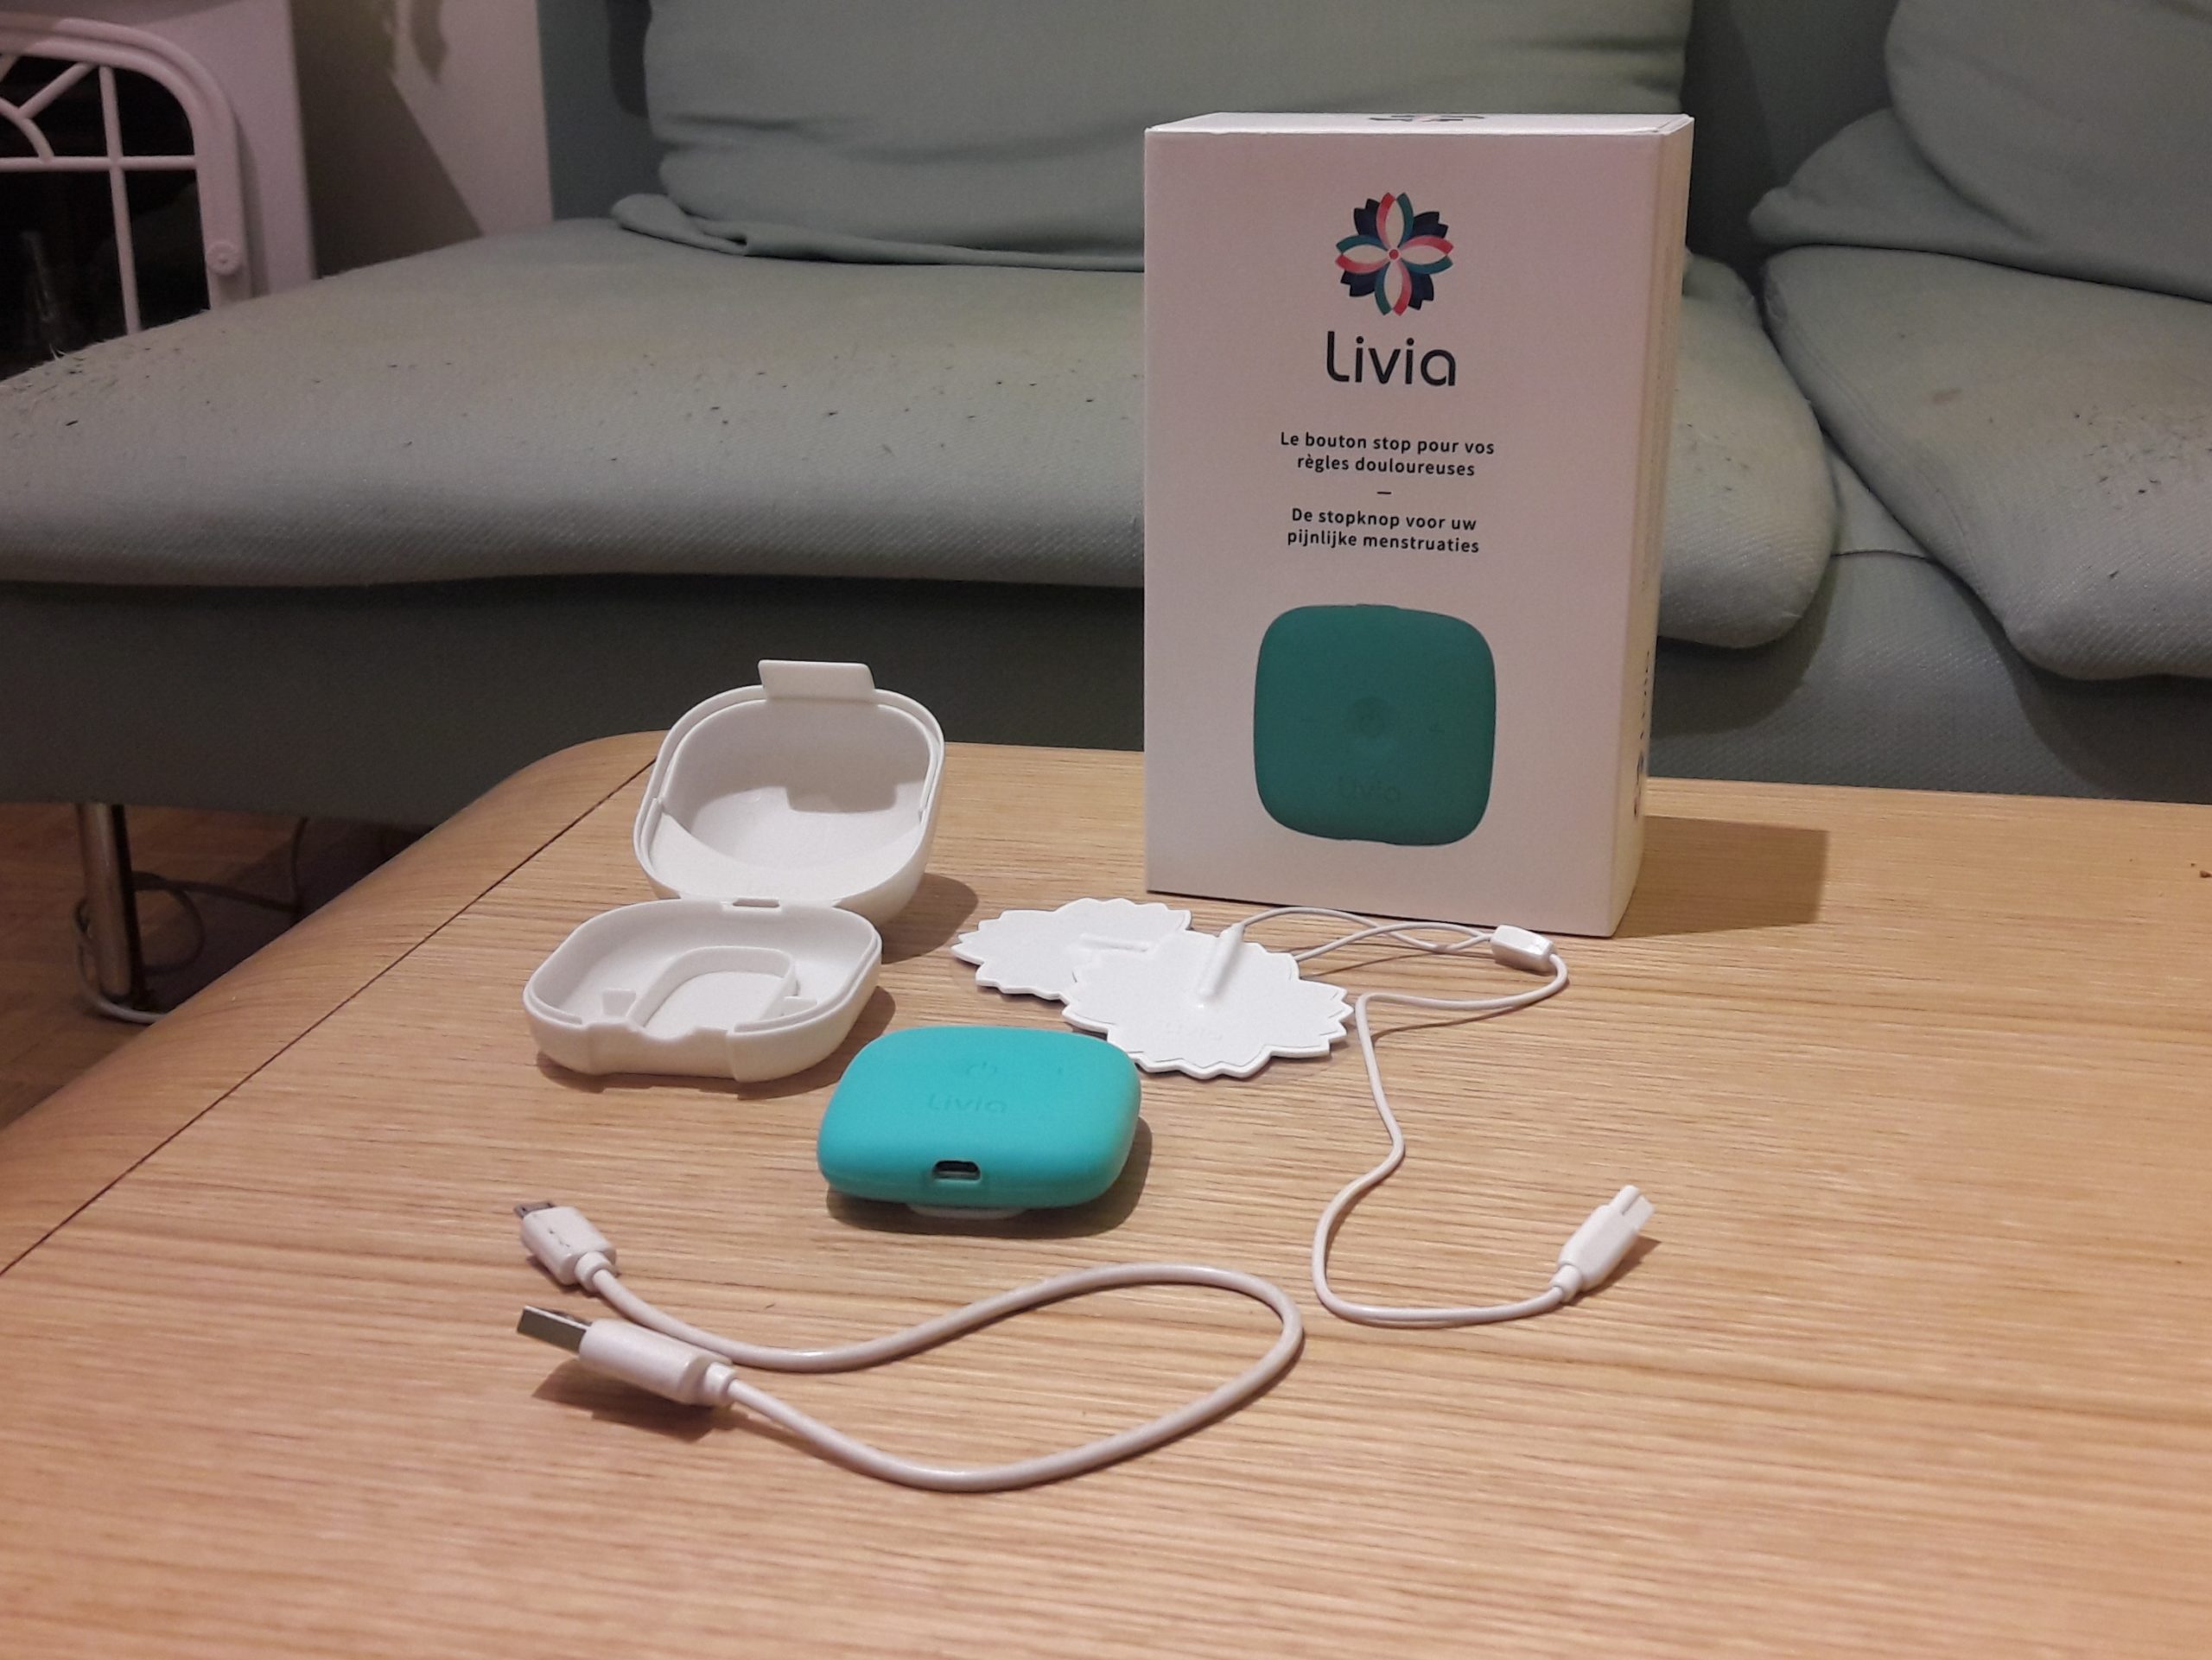 L'appareil anti douleurs de règles et endométriose - Livia